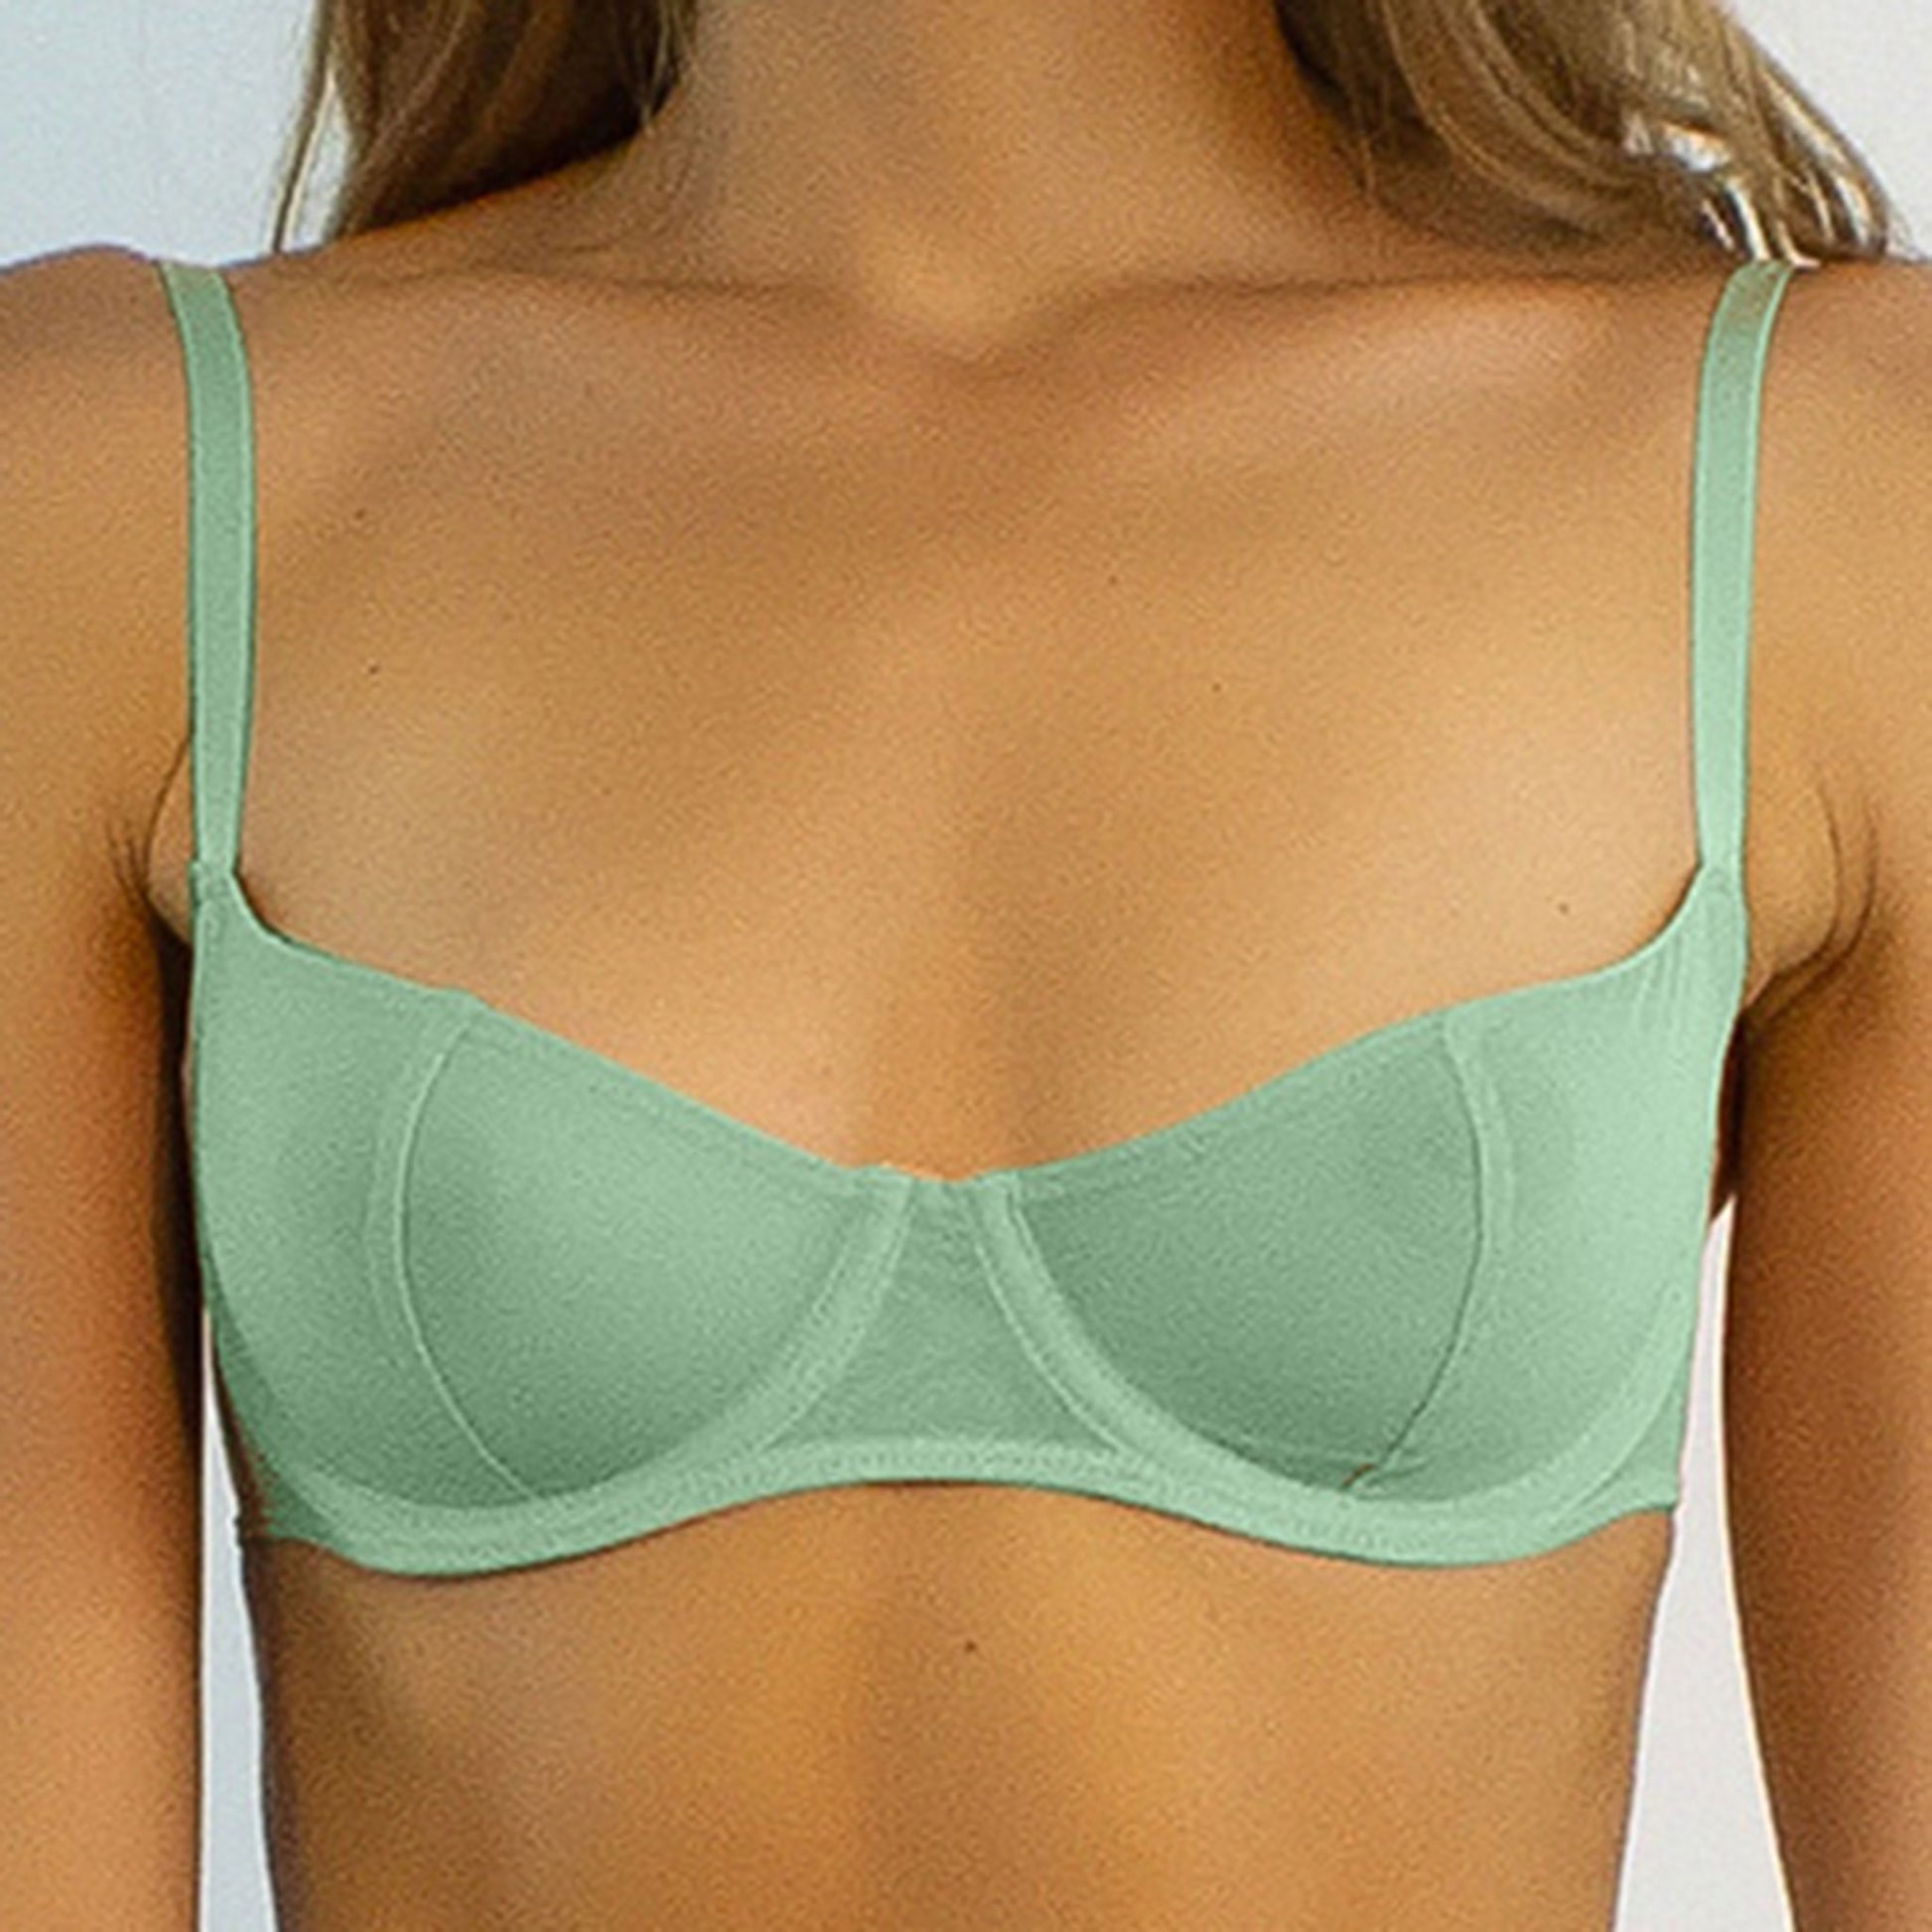 Nokaya fine mesh balconette bra in mint green color - as it looks front.